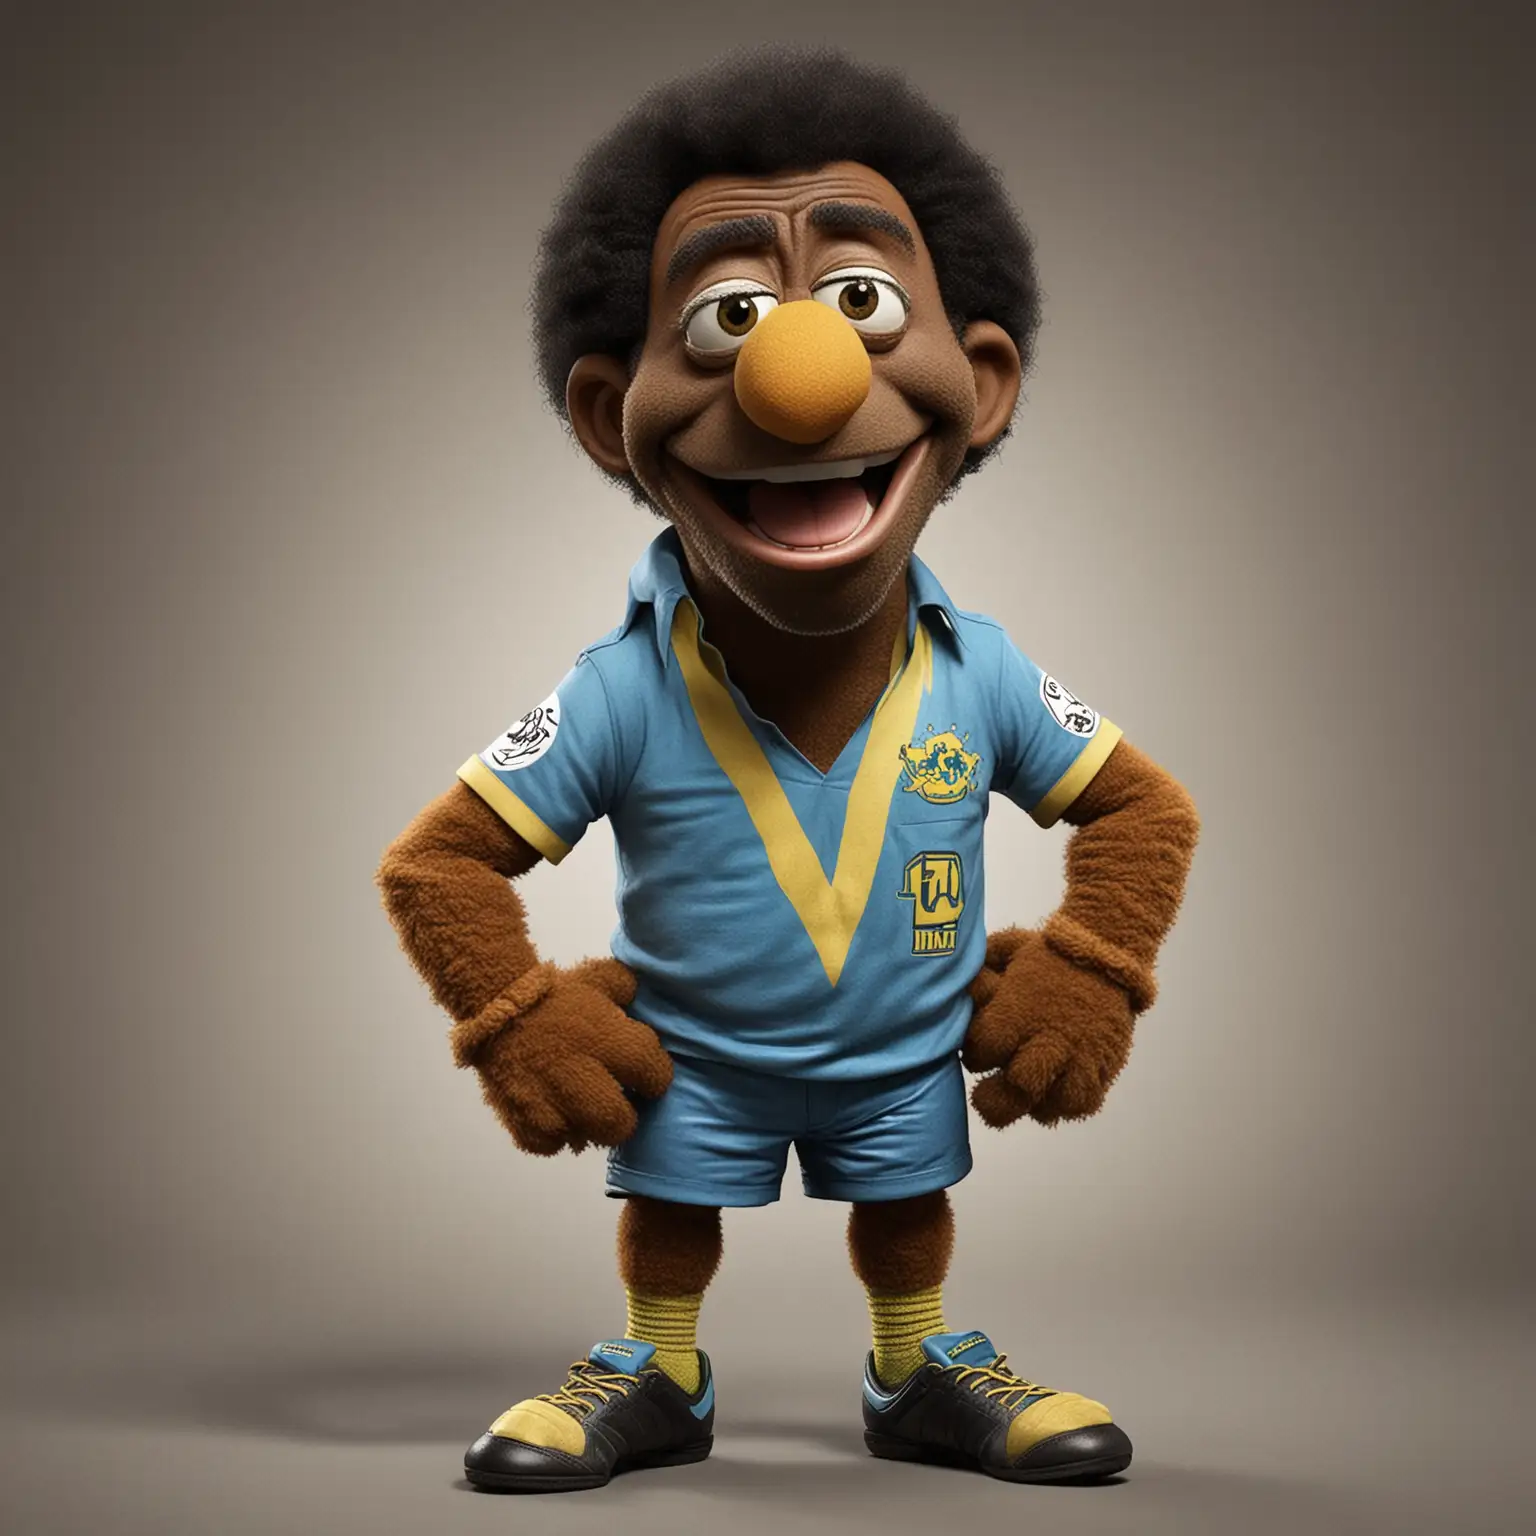 Soccer Legend Pel as Muppet Character